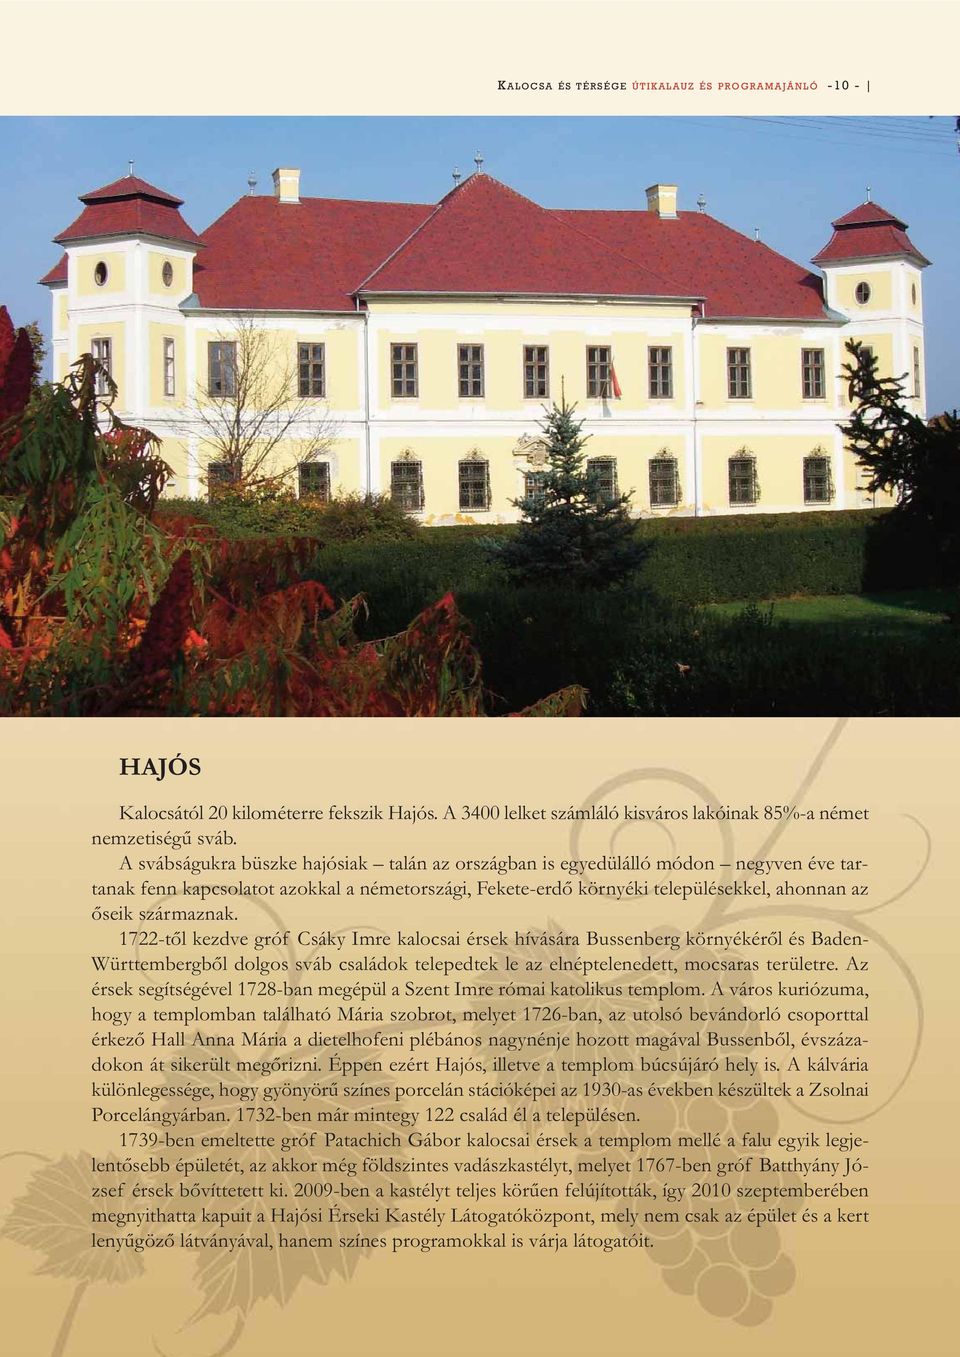 1722-től kezdve gróf Csáky Imre kalocsai érsek hívására Bussenberg környékéről és Baden- Württembergből dolgos sváb családok telepedtek le az elnéptelenedett, mocsaras területre.